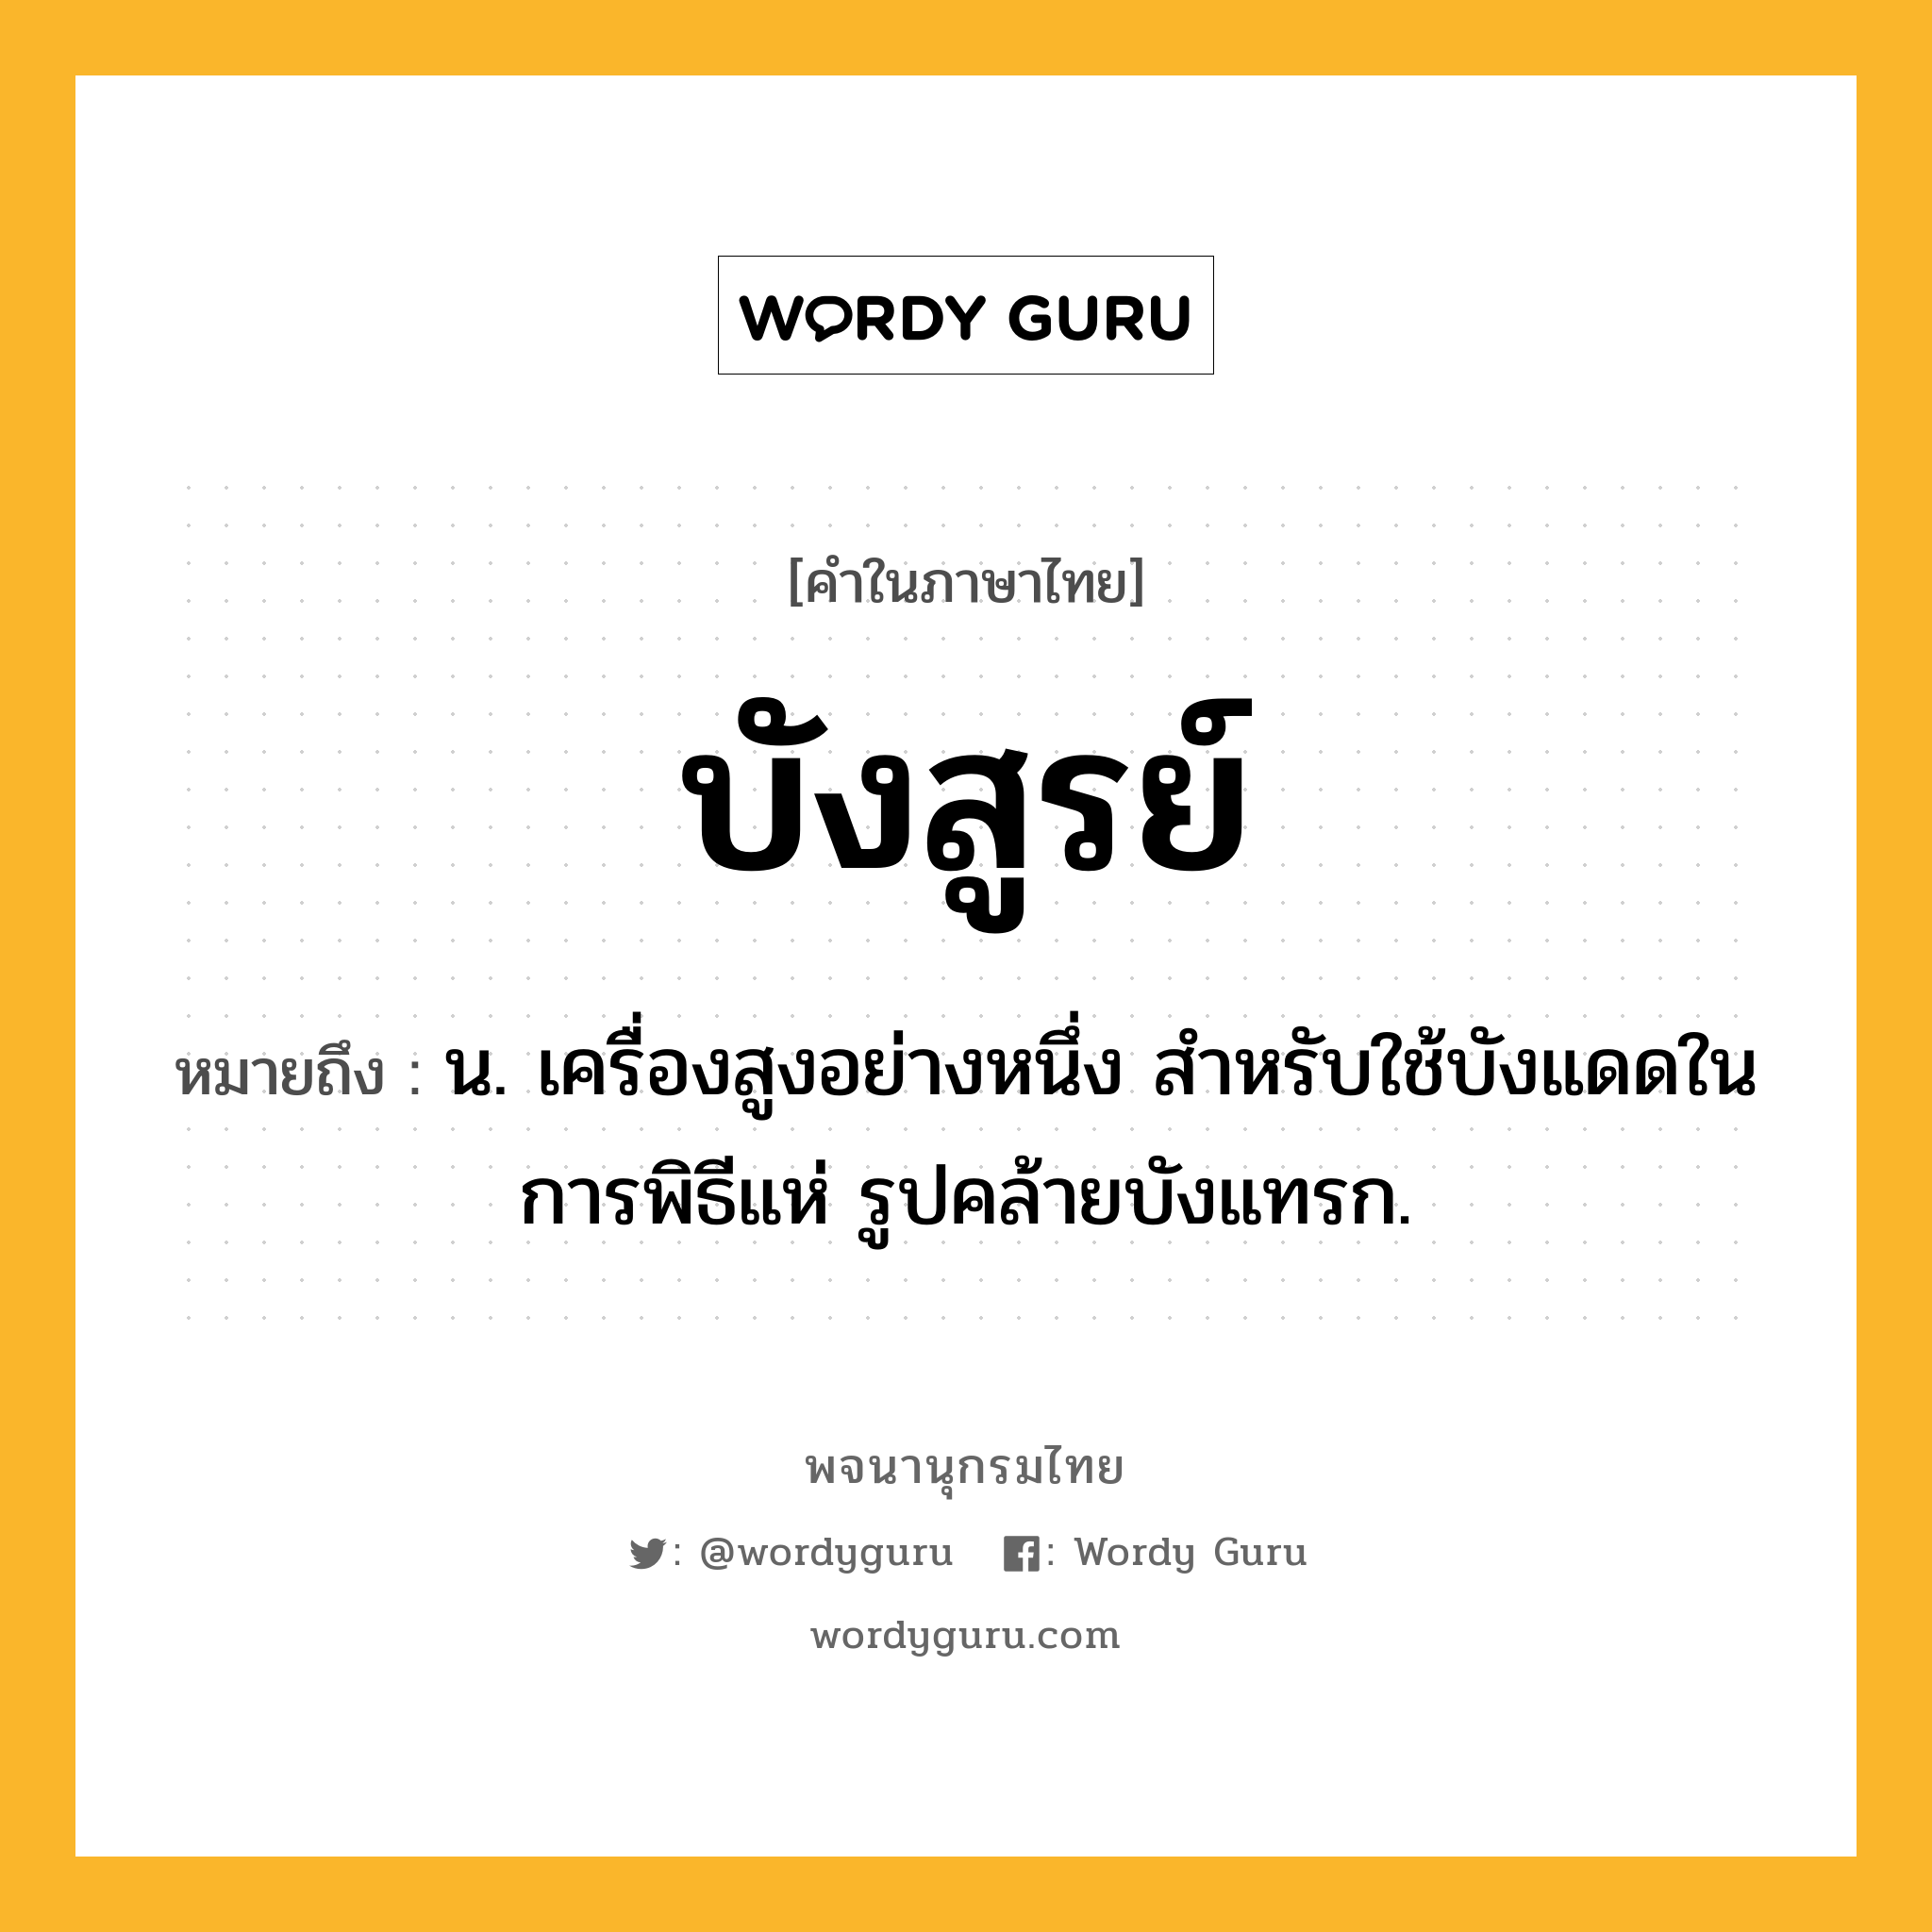 บังสูรย์ หมายถึงอะไร?, คำในภาษาไทย บังสูรย์ หมายถึง น. เครื่องสูงอย่างหนึ่ง สําหรับใช้บังแดดในการพิธีแห่ รูปคล้ายบังแทรก.